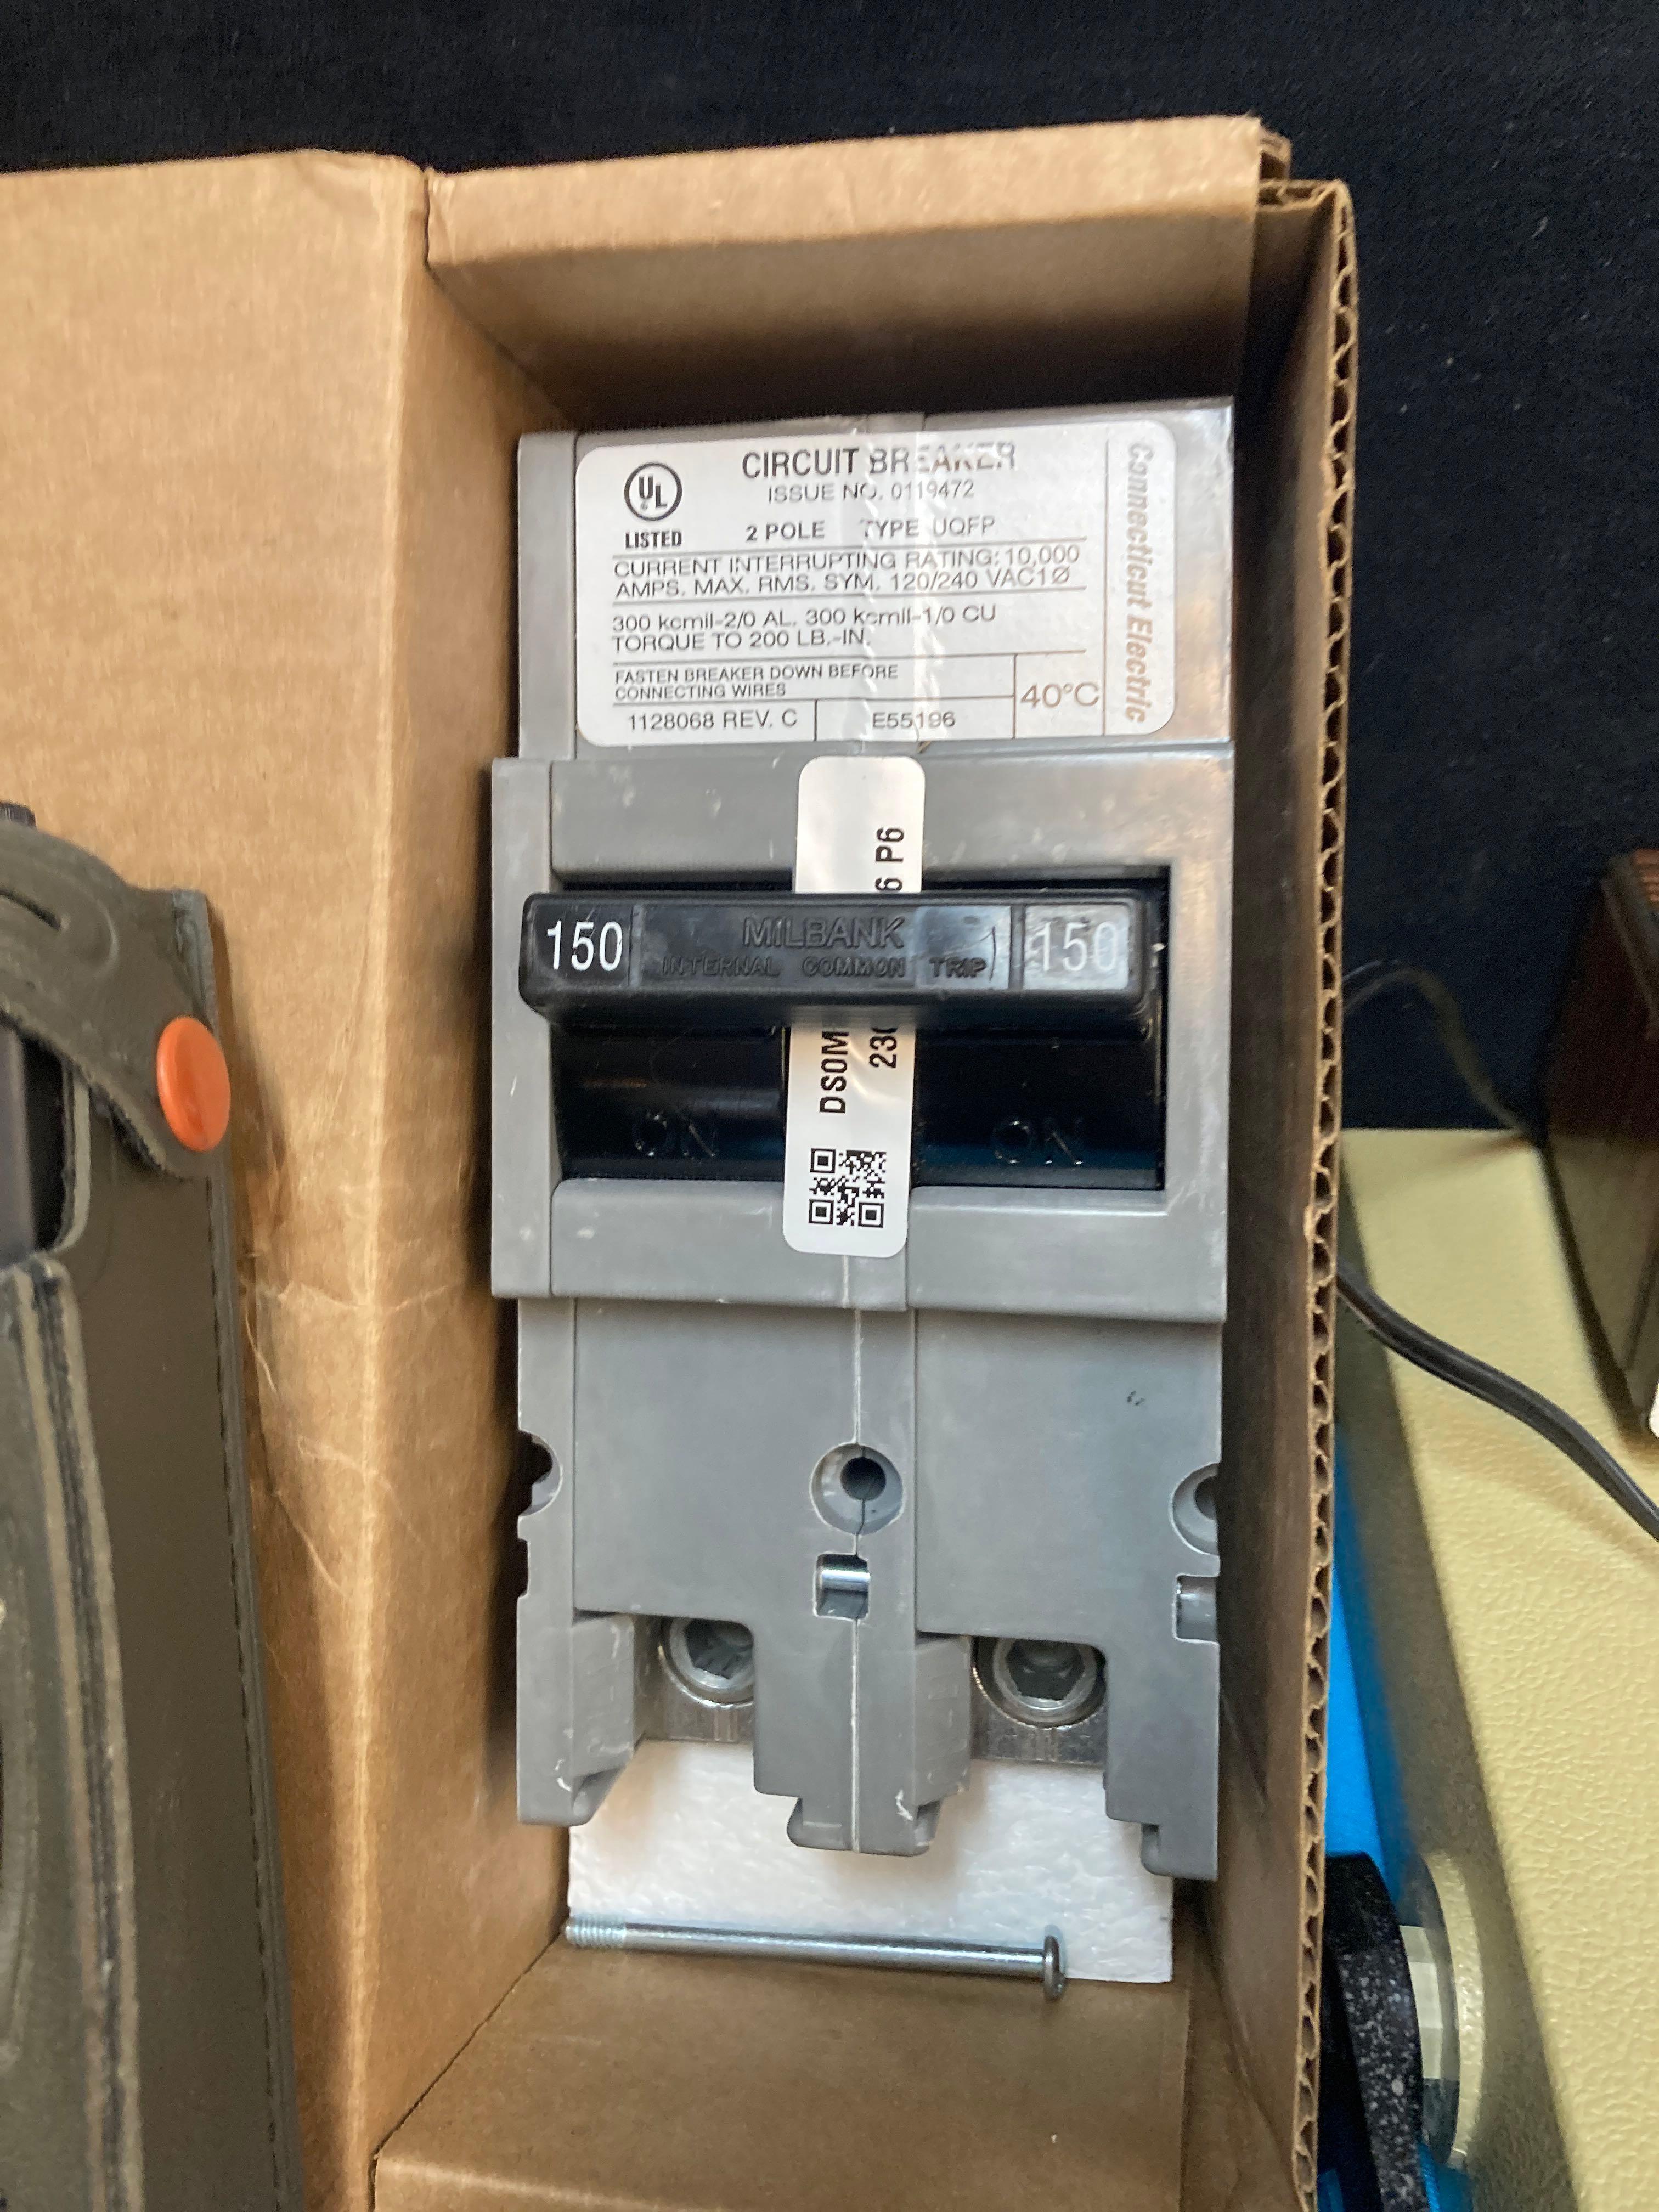 New circuit breaker, digital multimeter, walkie-talkie, and more